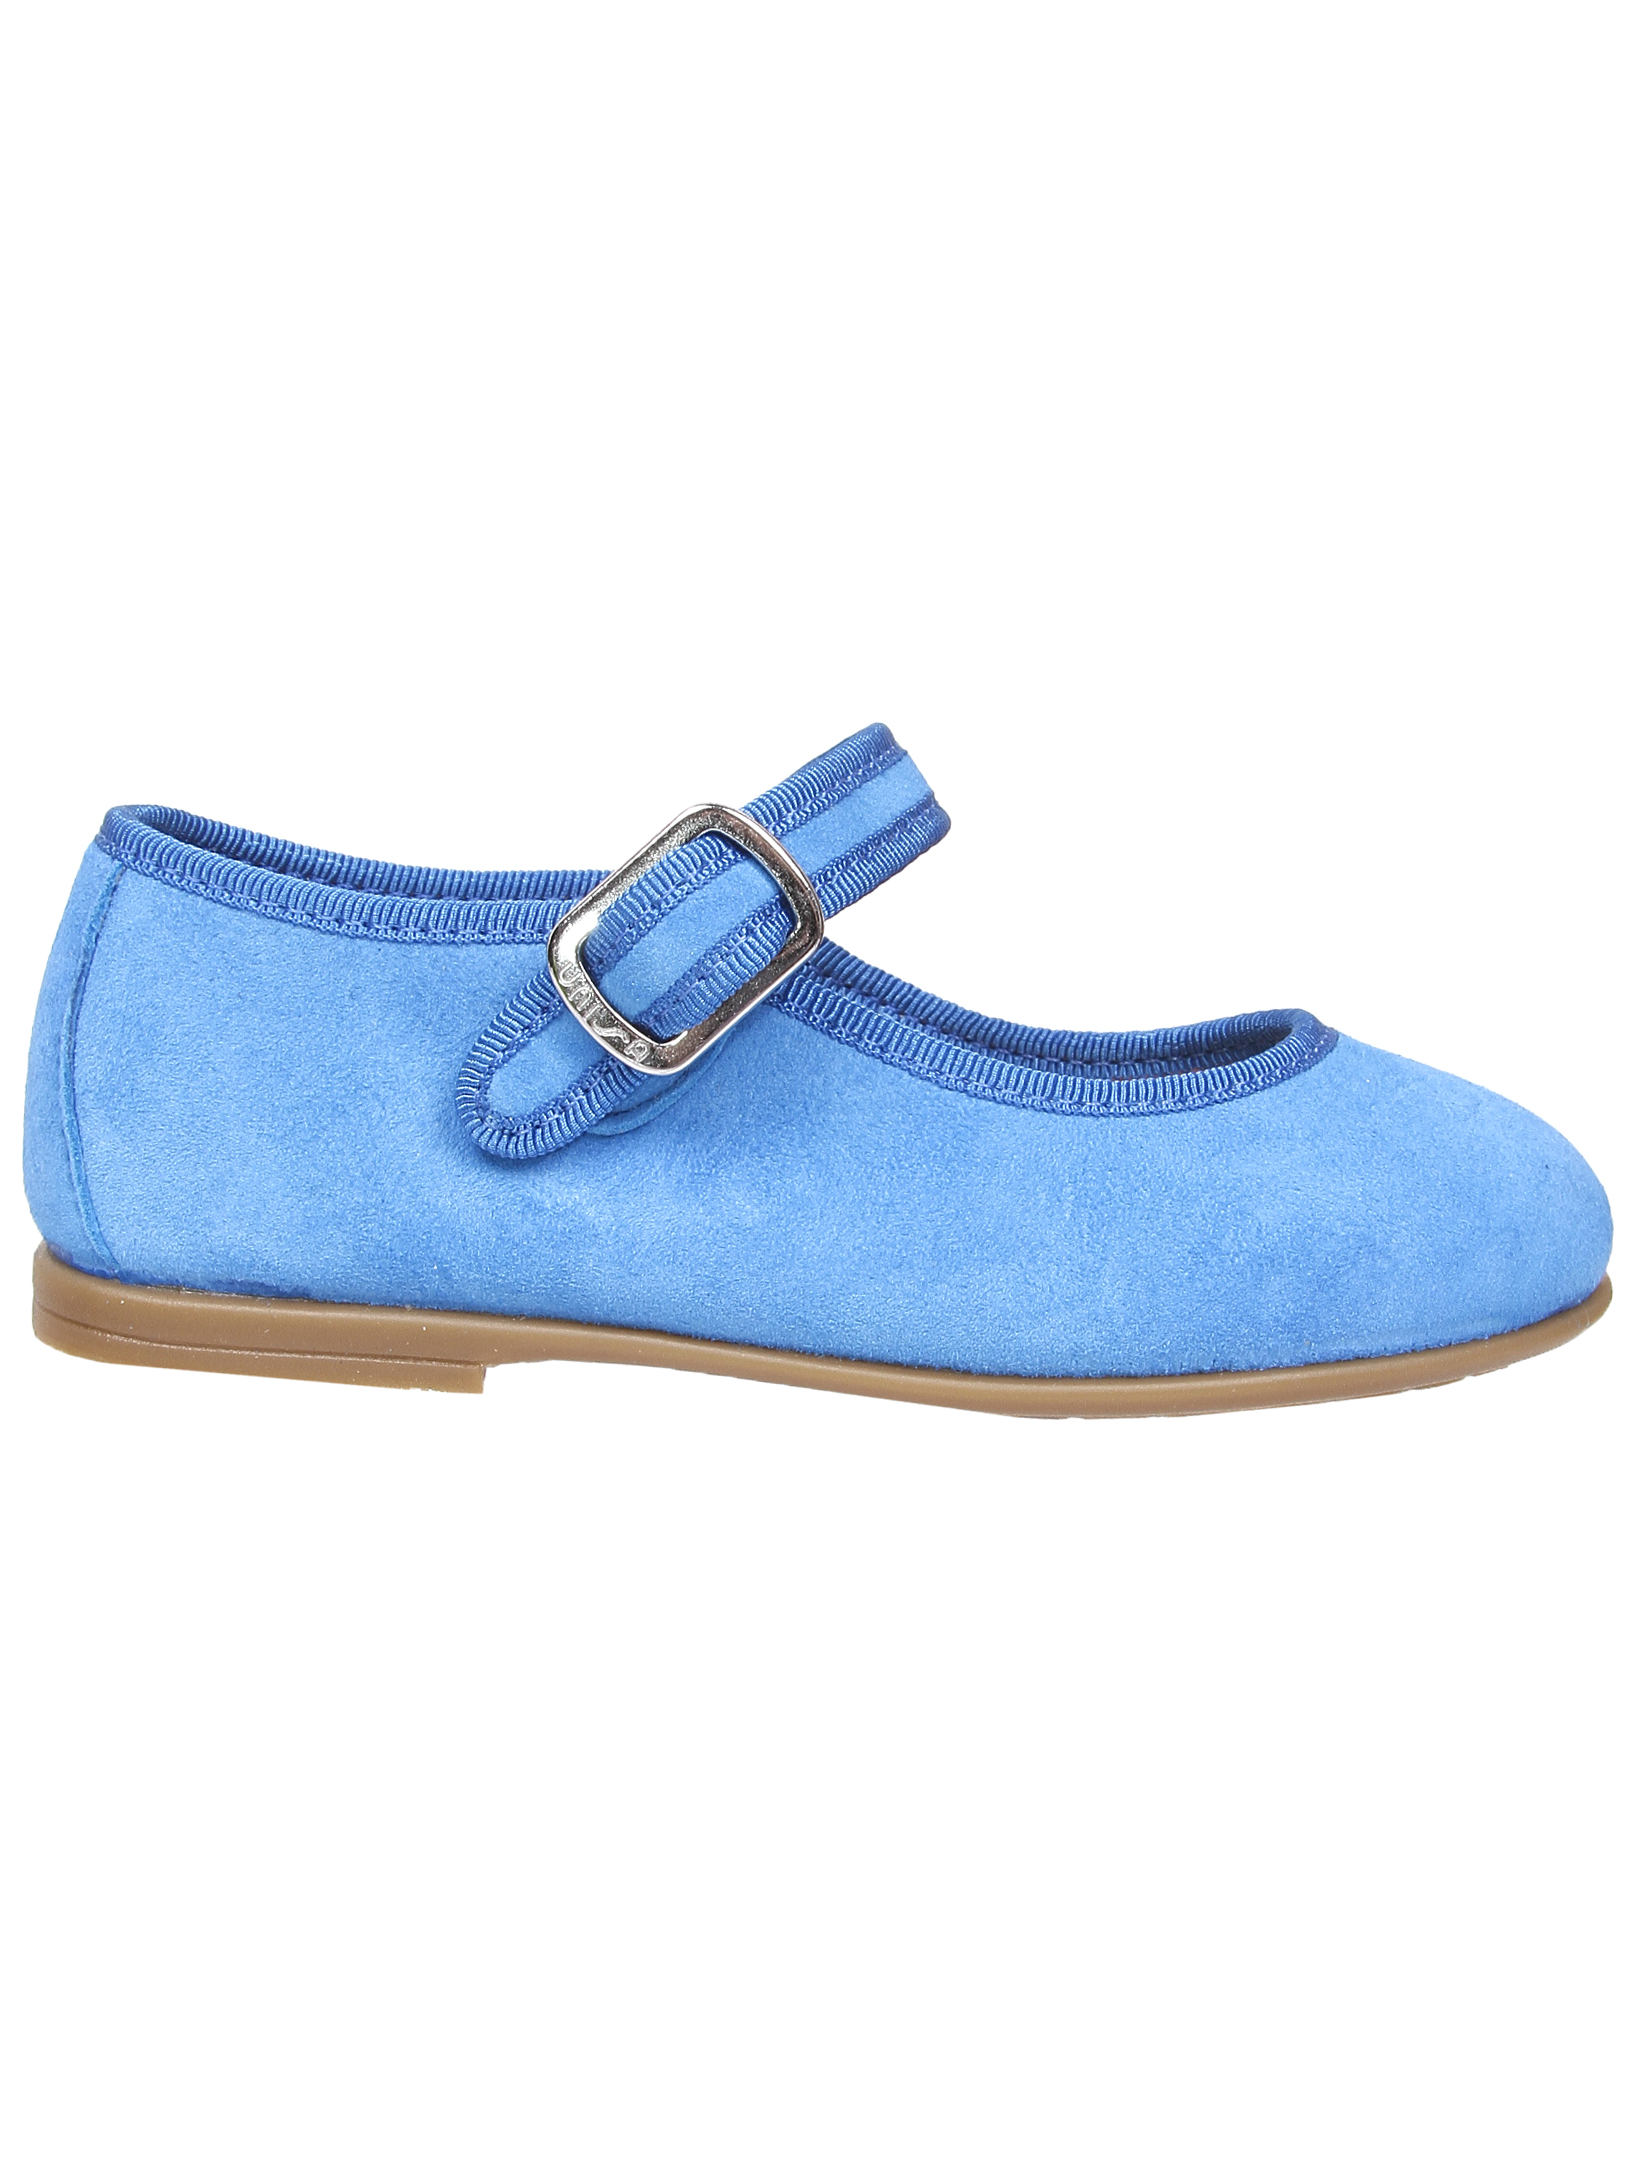 Туфли UNISA 1952860, цвет голубой, размер 36 2011509970013 - фото 3